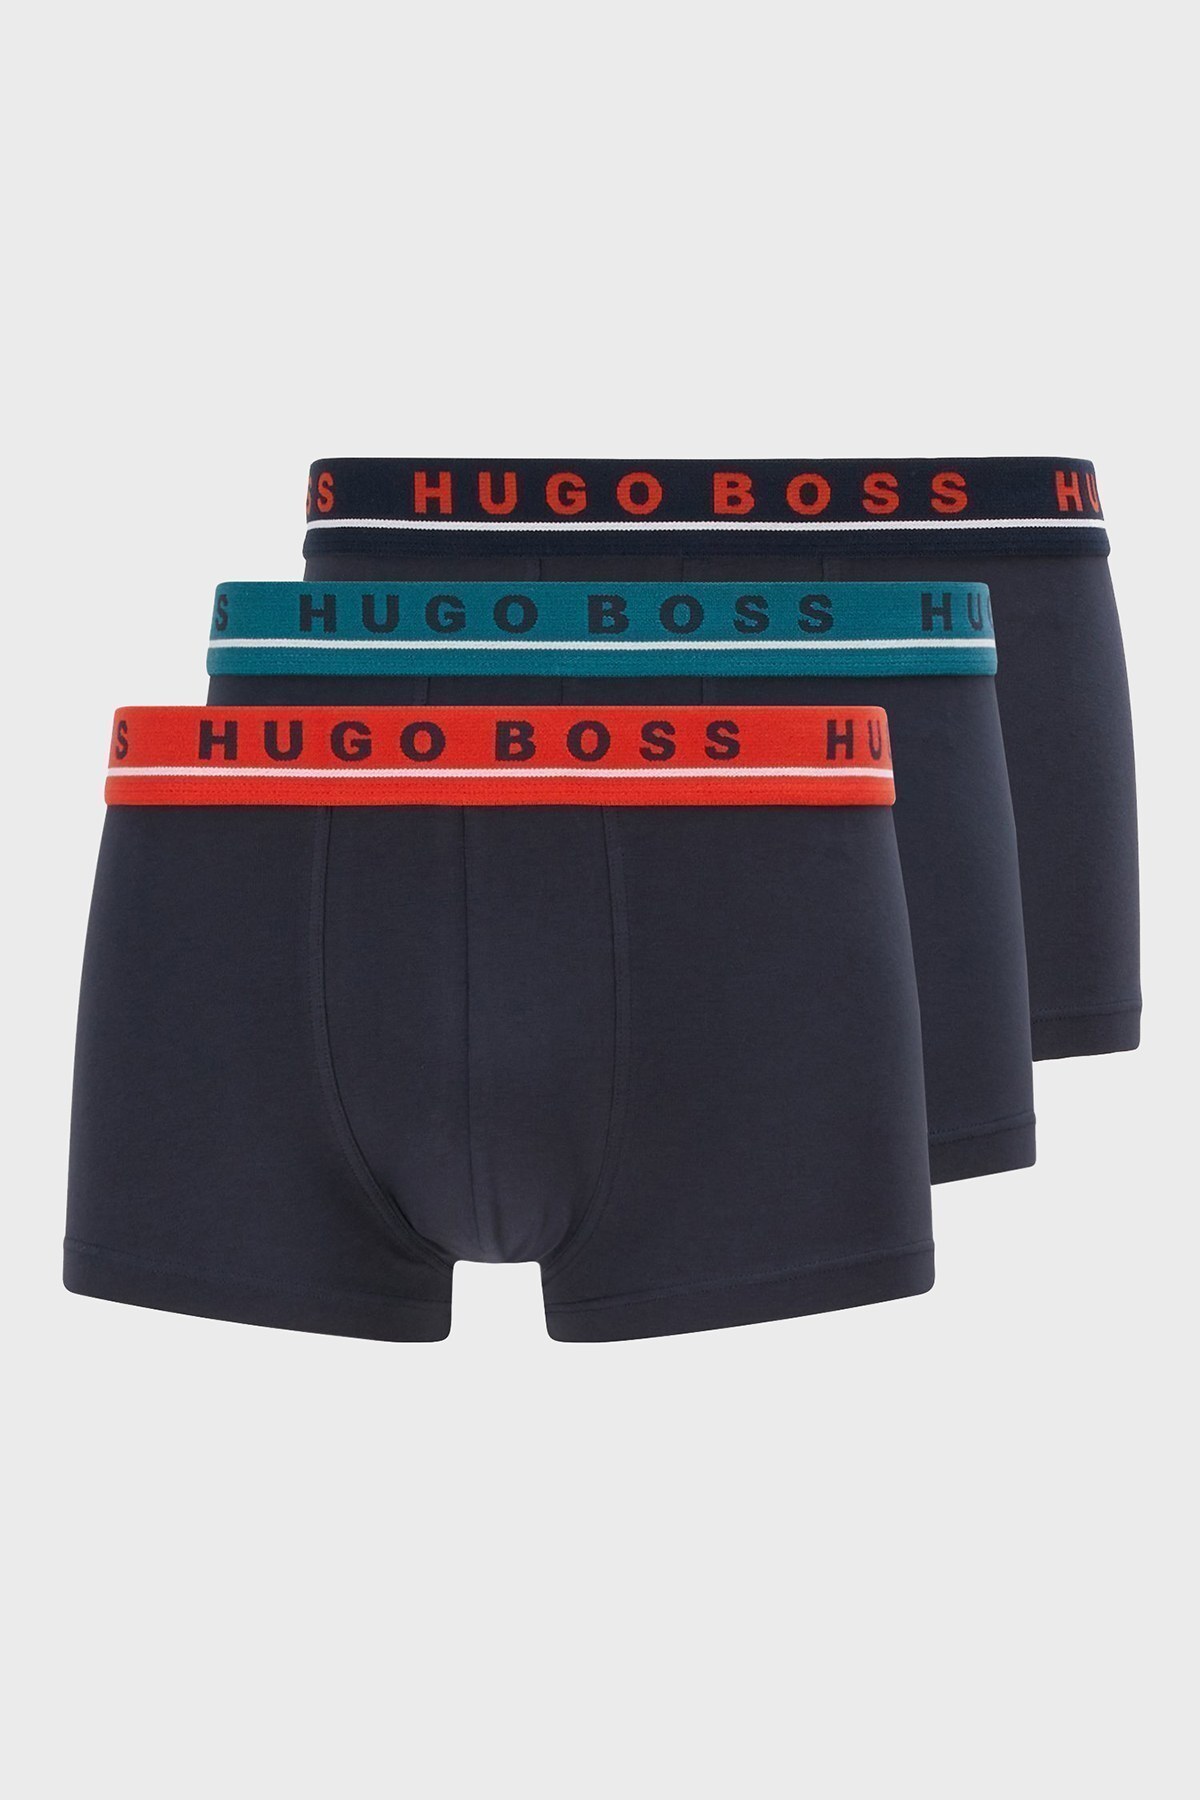 Hugo Boss 3 Pack Erkek Boxer 50458488 965 LACİVERT